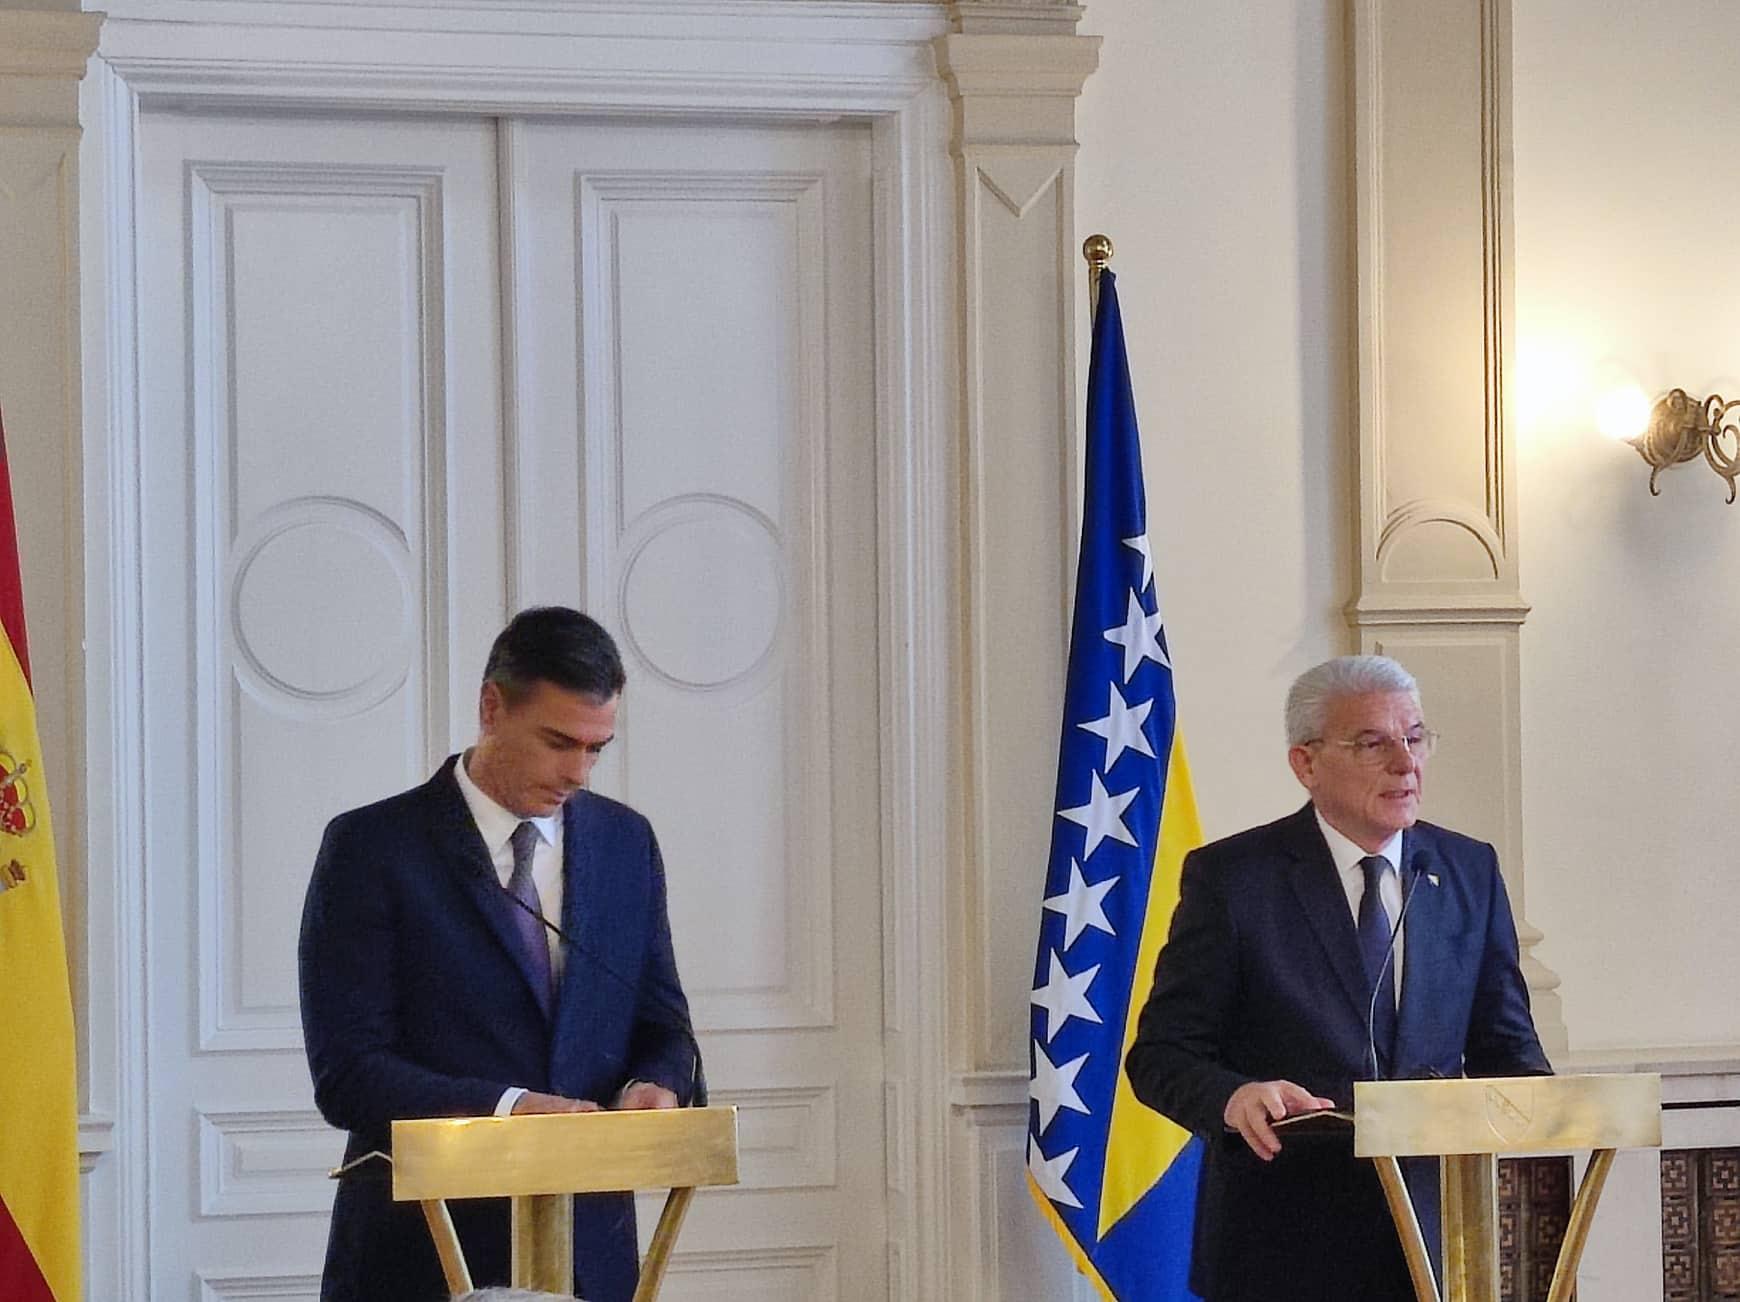 Sančez i Džaferović: Govorili smo o bilateralnim odnosima i evropskom putu BiH - Avaz